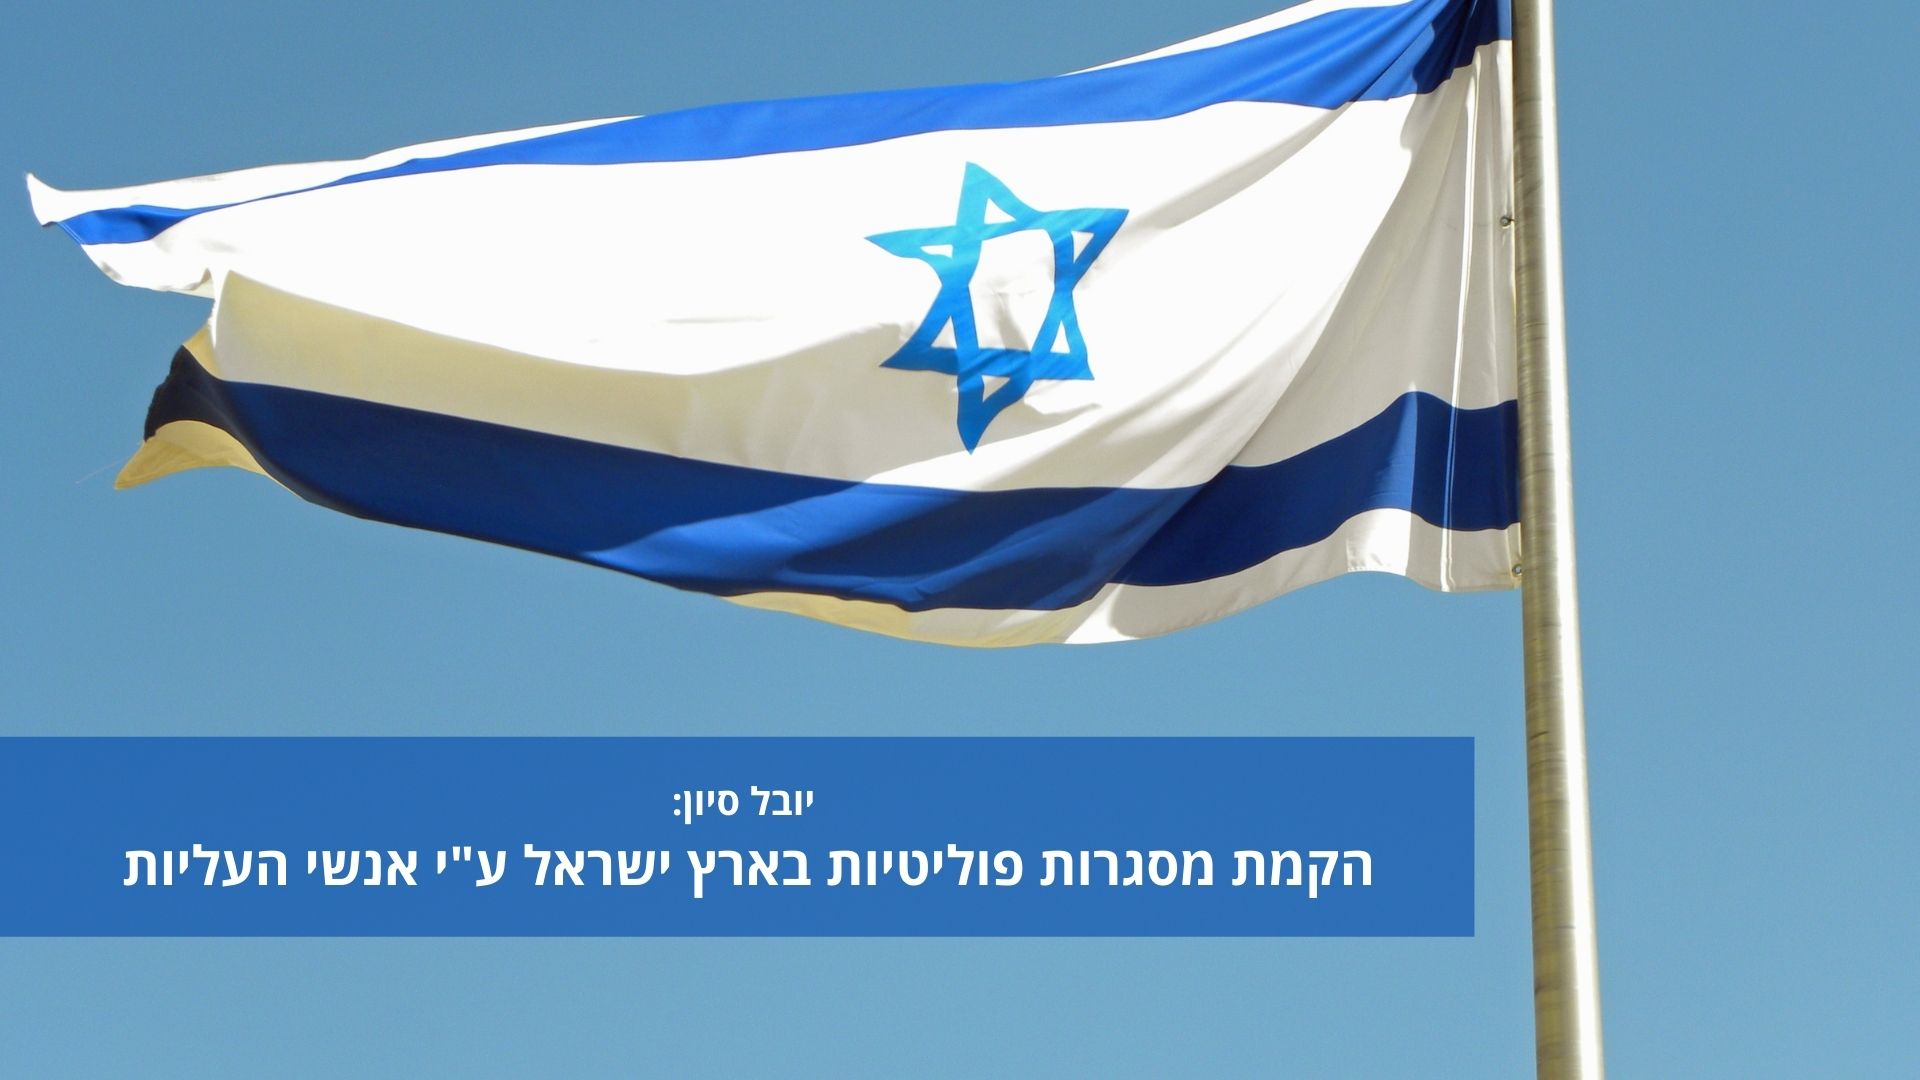 יובל סיון - הקמת מסגרות פוליטיות בארץ ישראל ע"י אנשי העליות